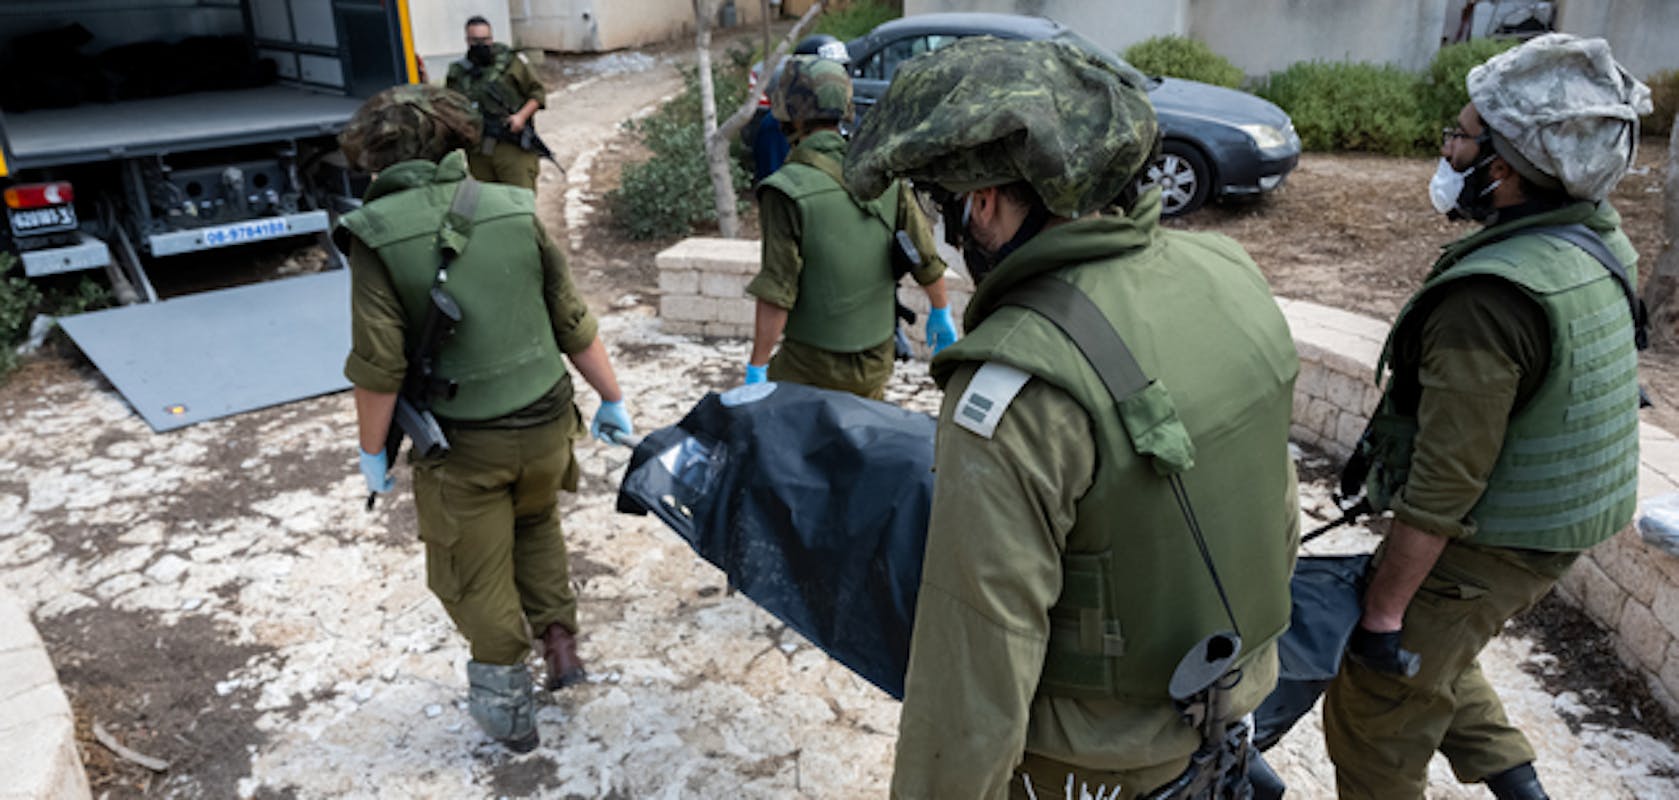 Israël : les groupes armés palestiniens doivent répondre des homicides délibérés, enlèvements et attaques menées sans discernement contre la population civile
